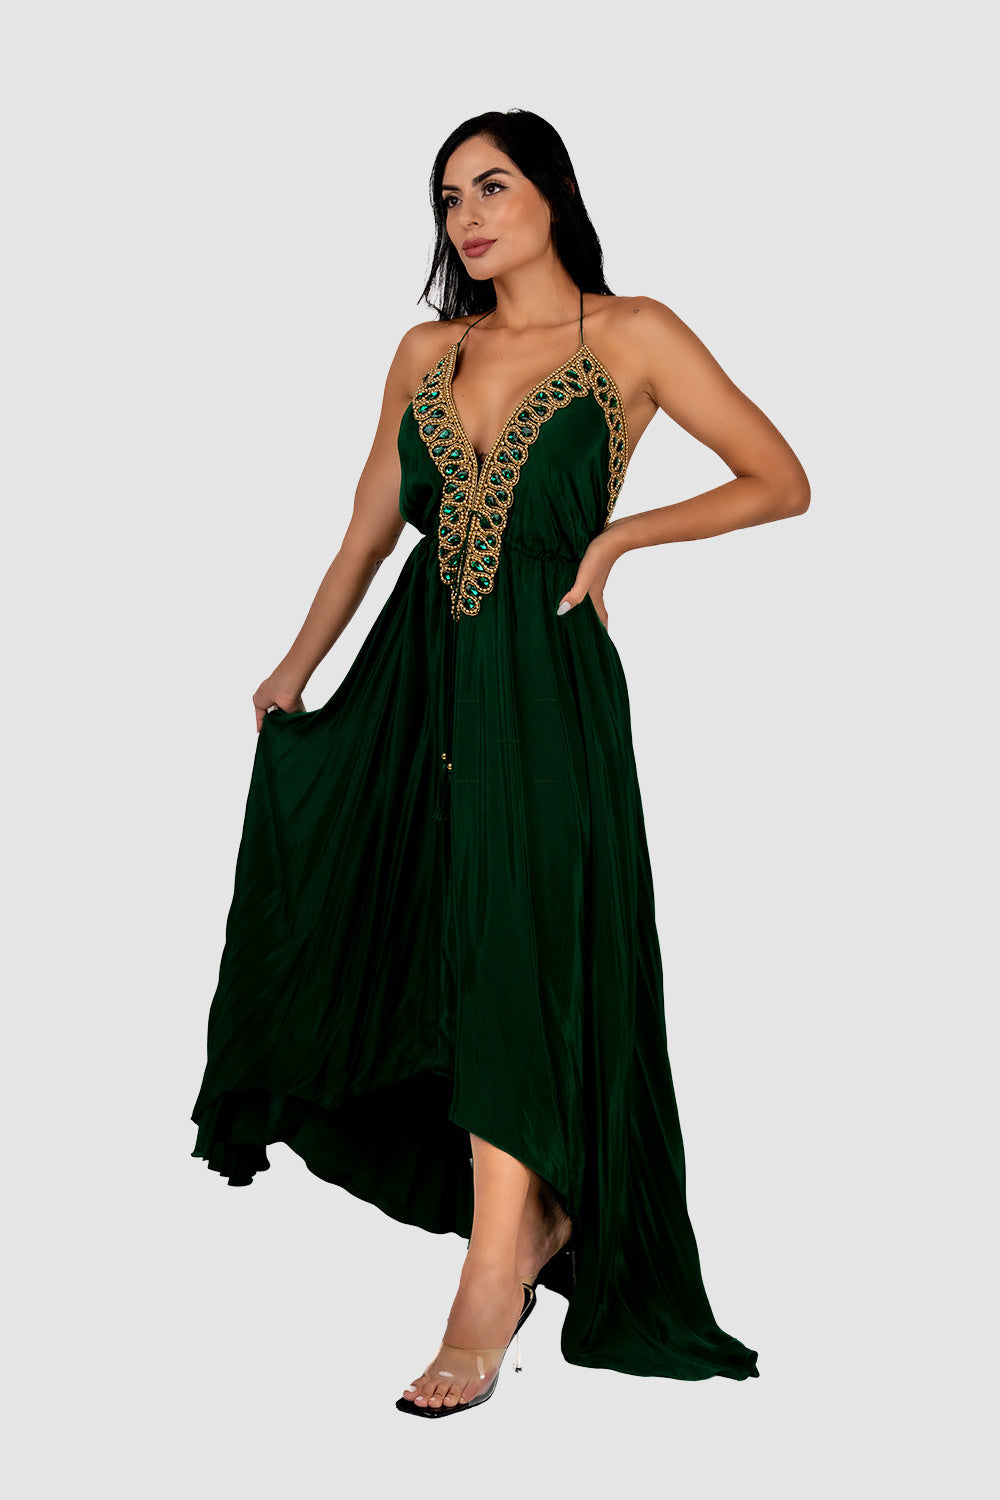 Casa Del Mar Embroidered Emerald Maxi Dress